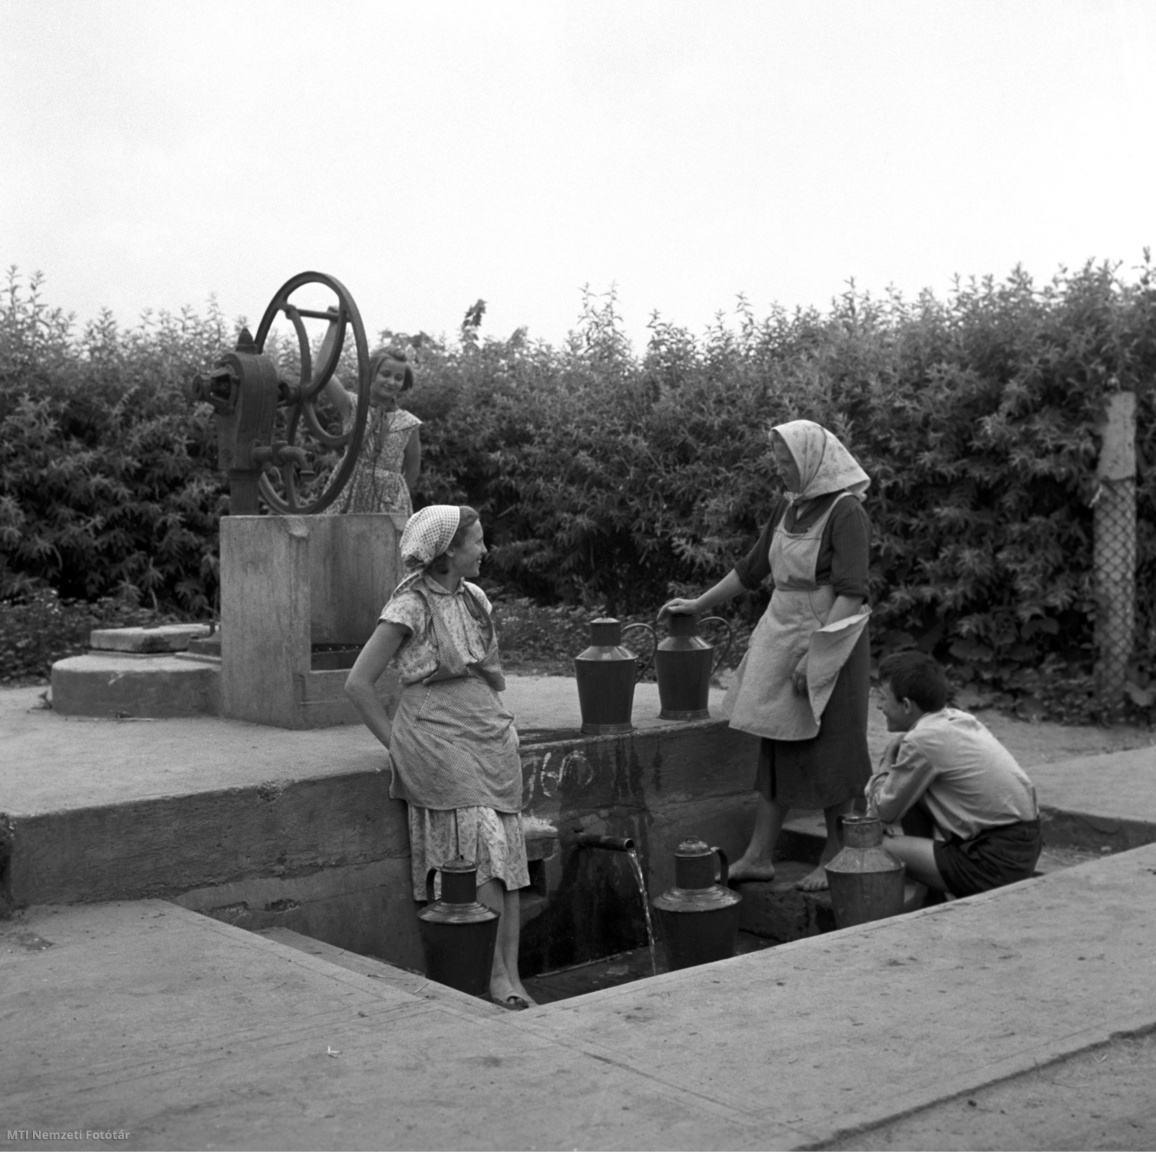 Magyarország, 1960. június 20. Asszonyok beszélgetnek, mellettük kanna, háttérben fiatal lány vizet húz a kerekes kútból